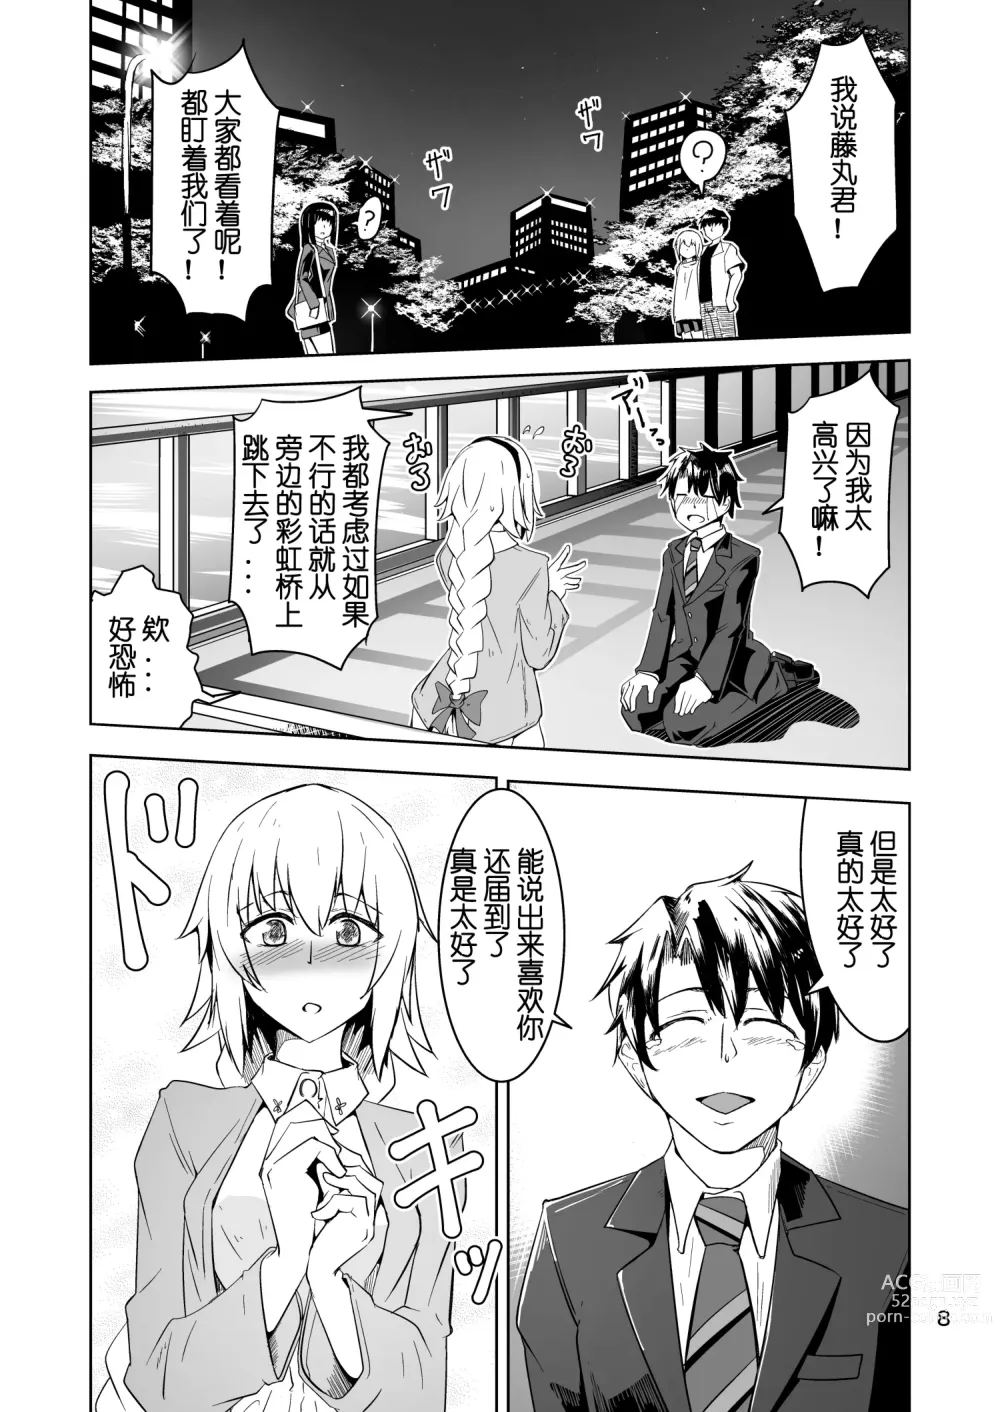 Page 7 of doujinshi Cosplay Uriko no Otomodachi Daigowa: Otomodachi Kara...